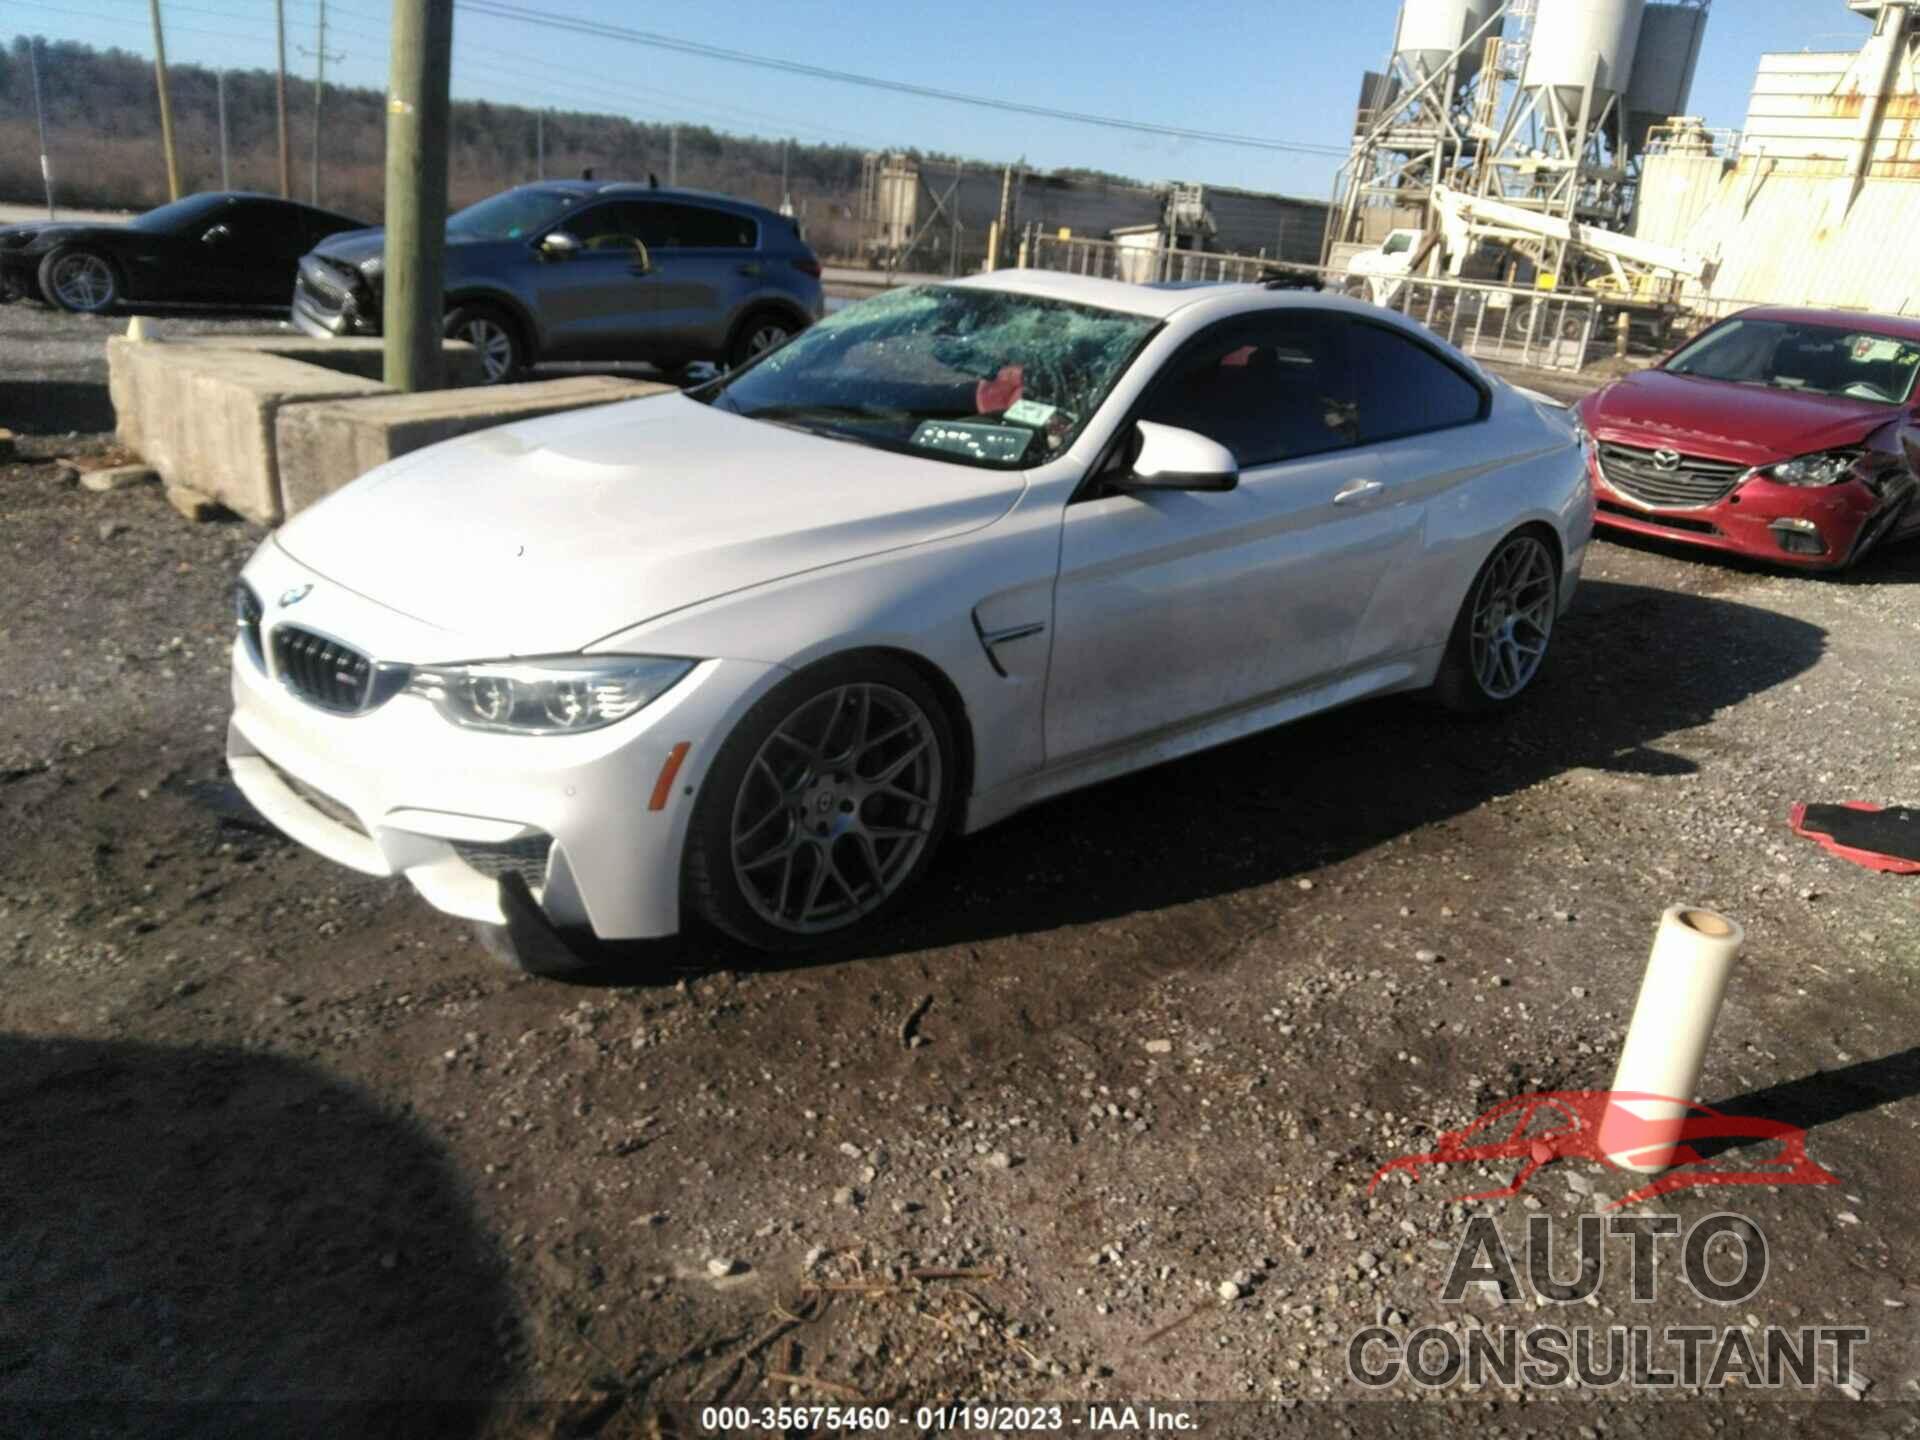 BMW M4 2015 - WBS3R9C58FK332367